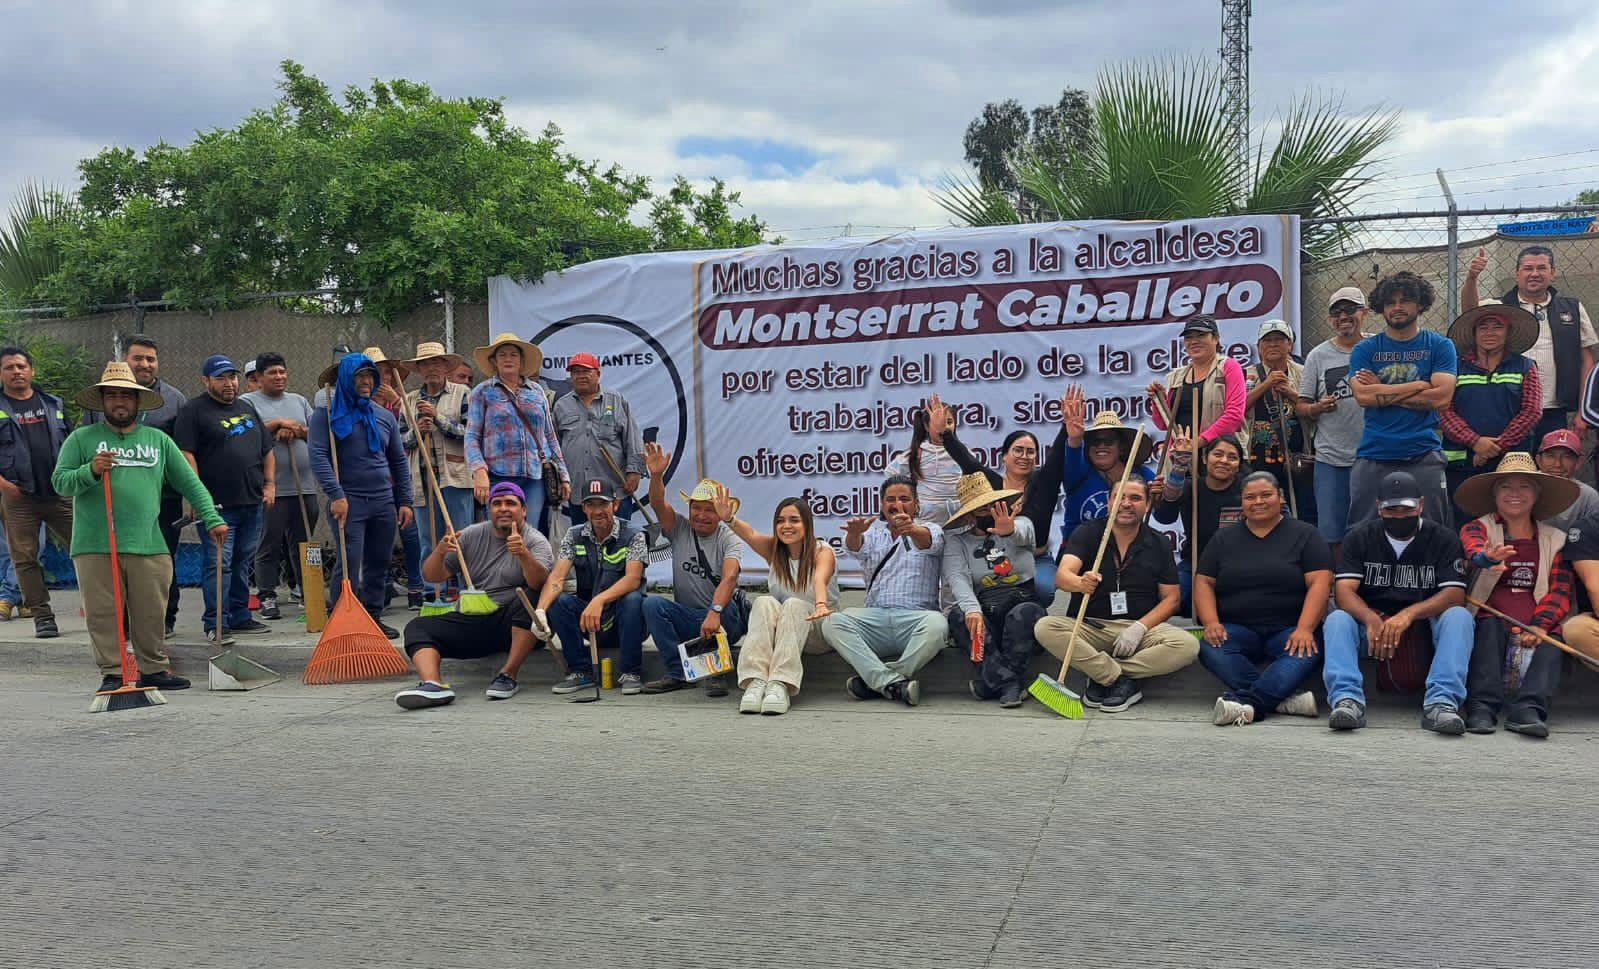 Respalda sector trabajador de Tijuana a la alcaldesa Montserrat Caballero